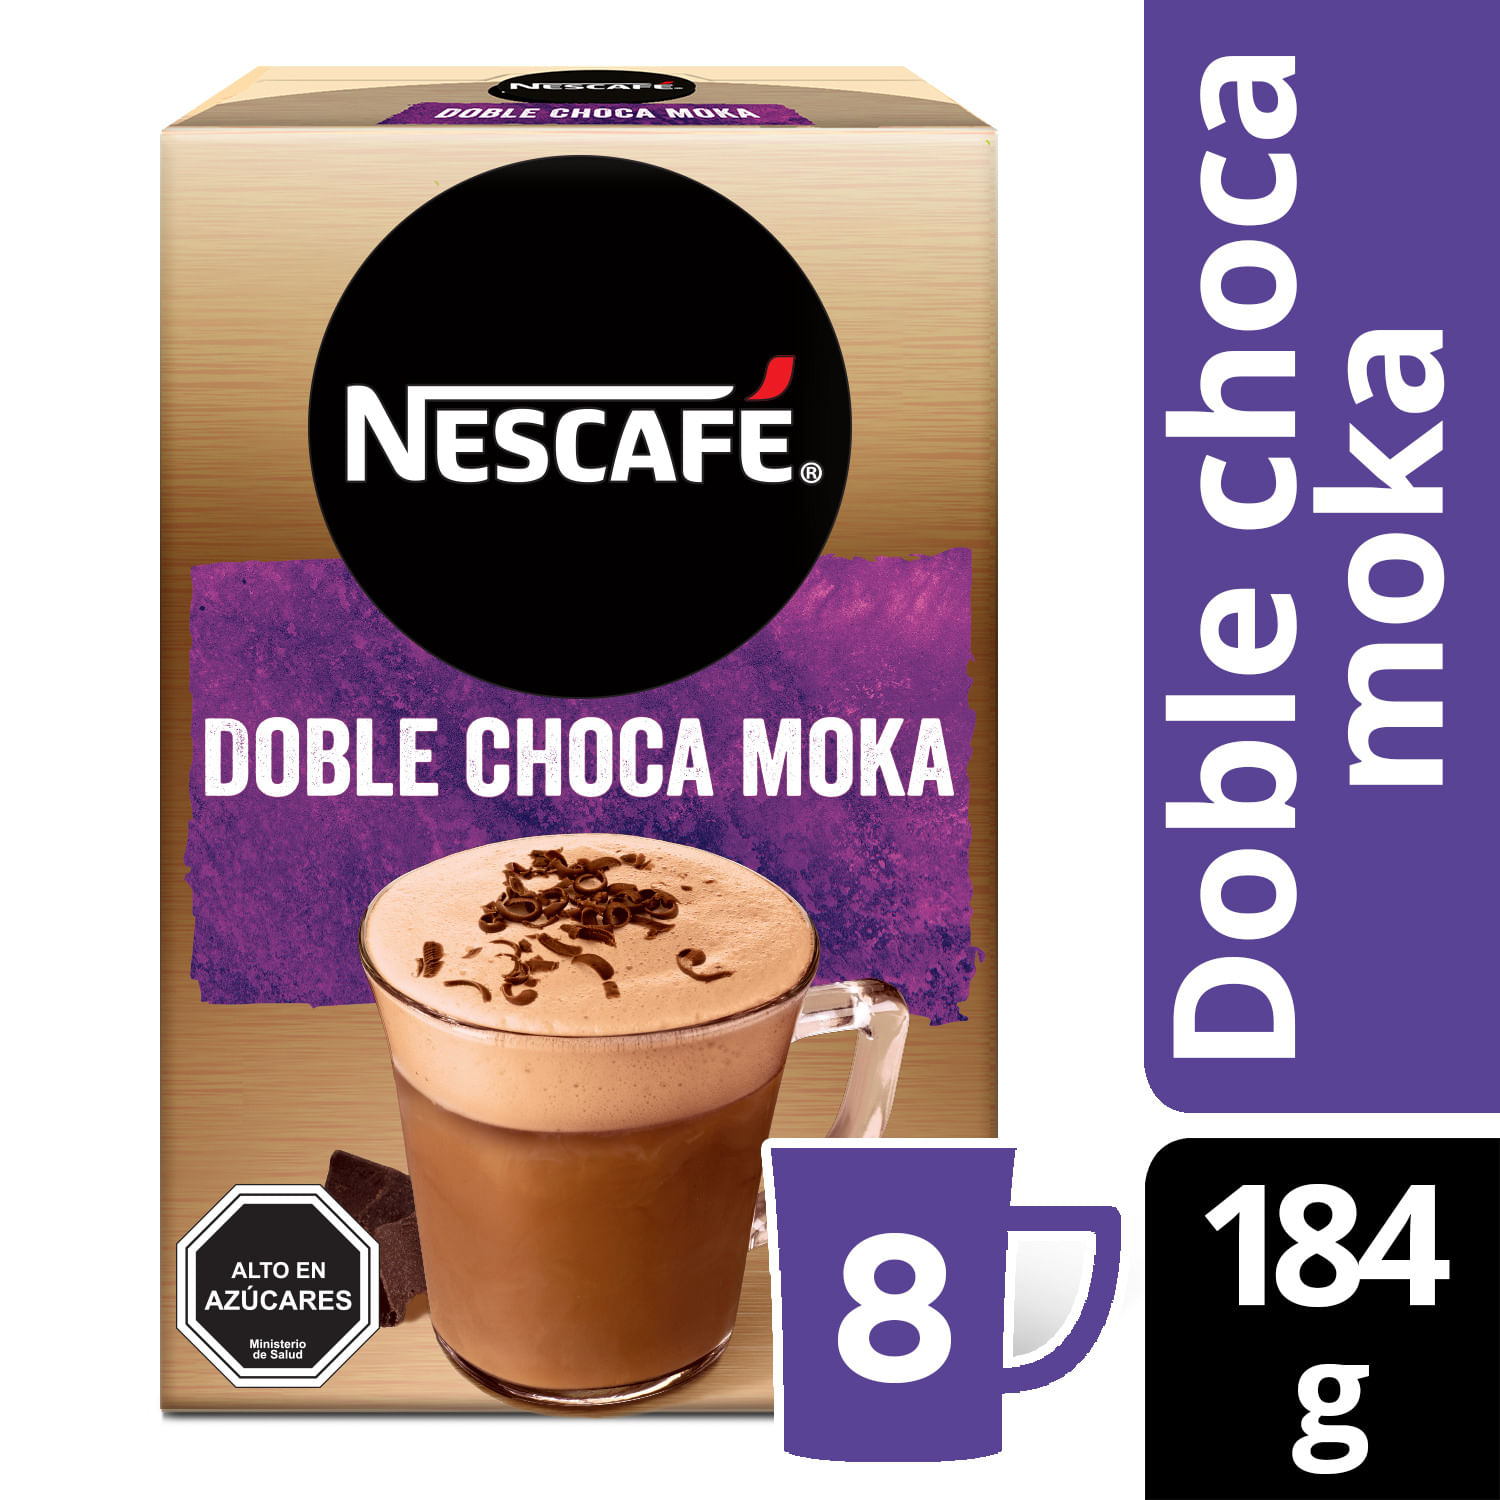 Cafe-Nescafe-Doble-Choca-Moka-184-g-8-sobres.jpg